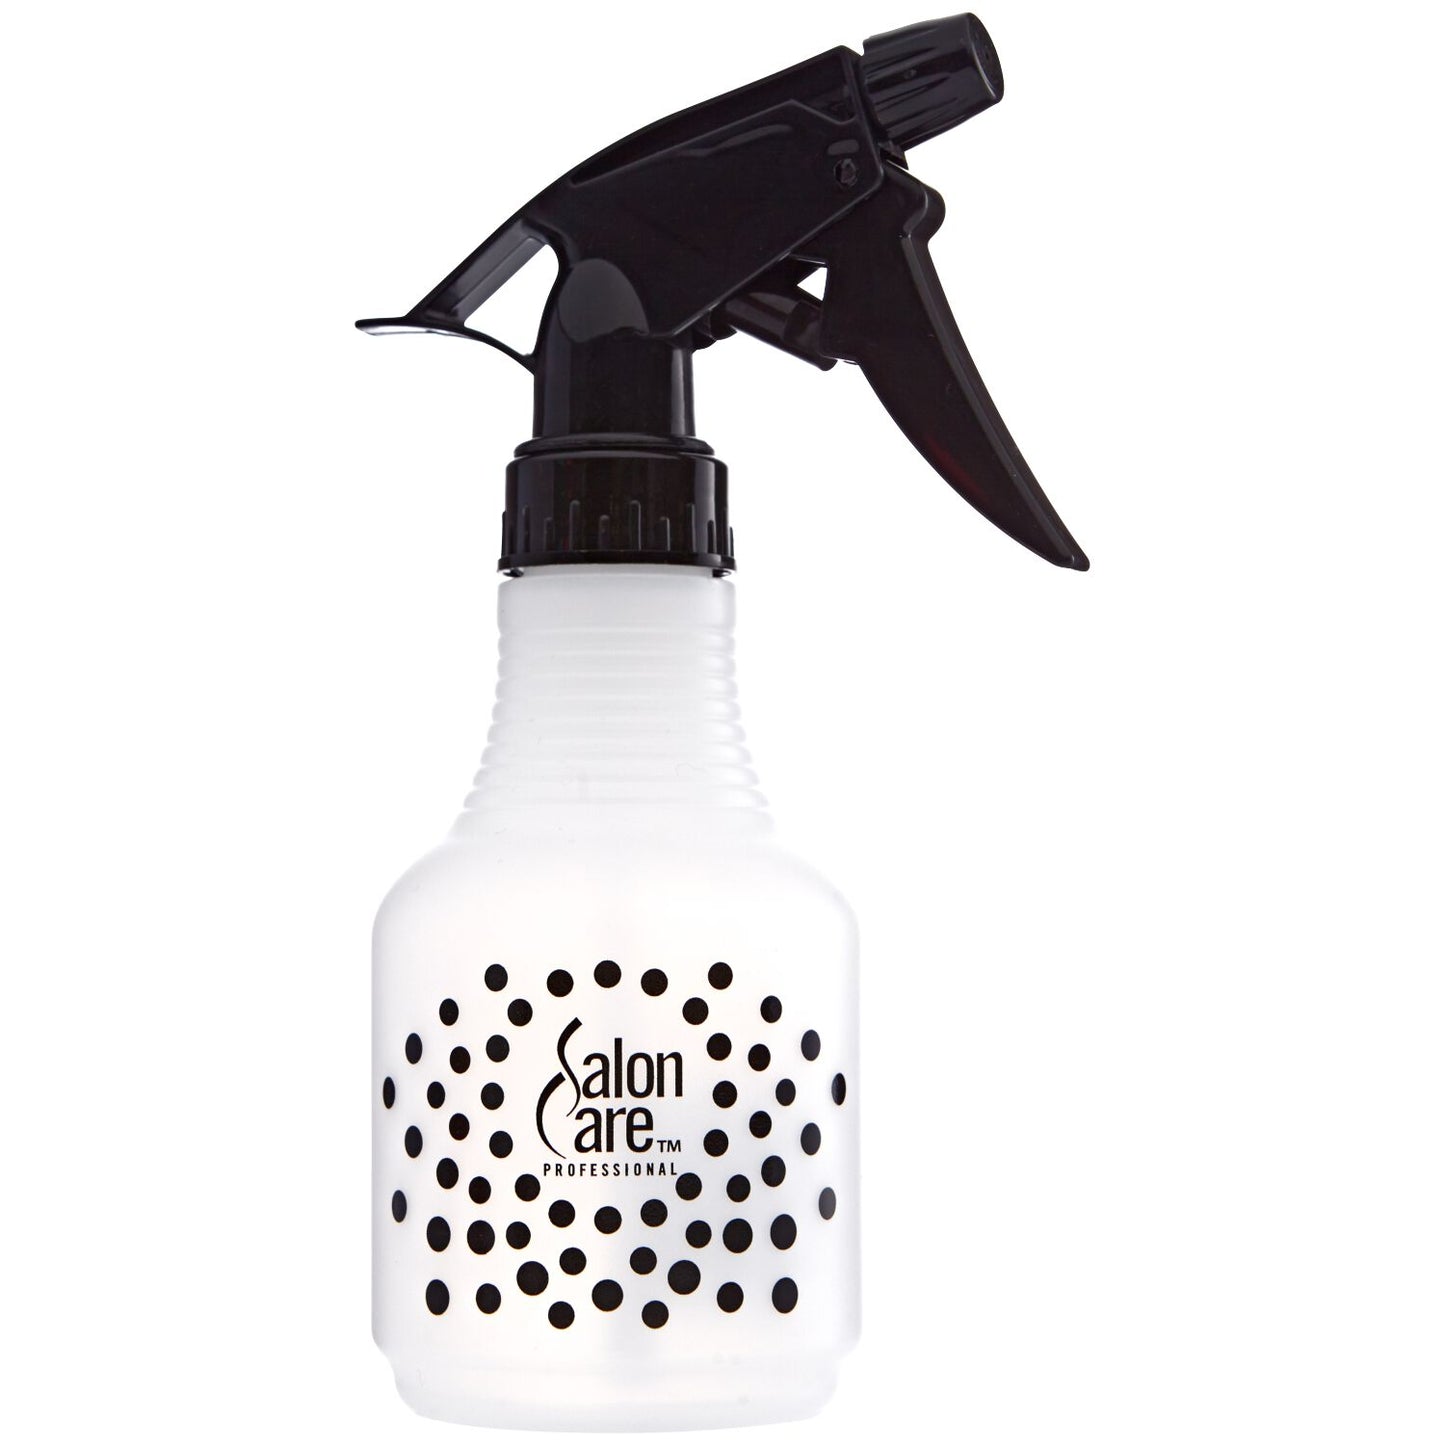 Salon Care Sheer Mist Trigger Spray Bottle